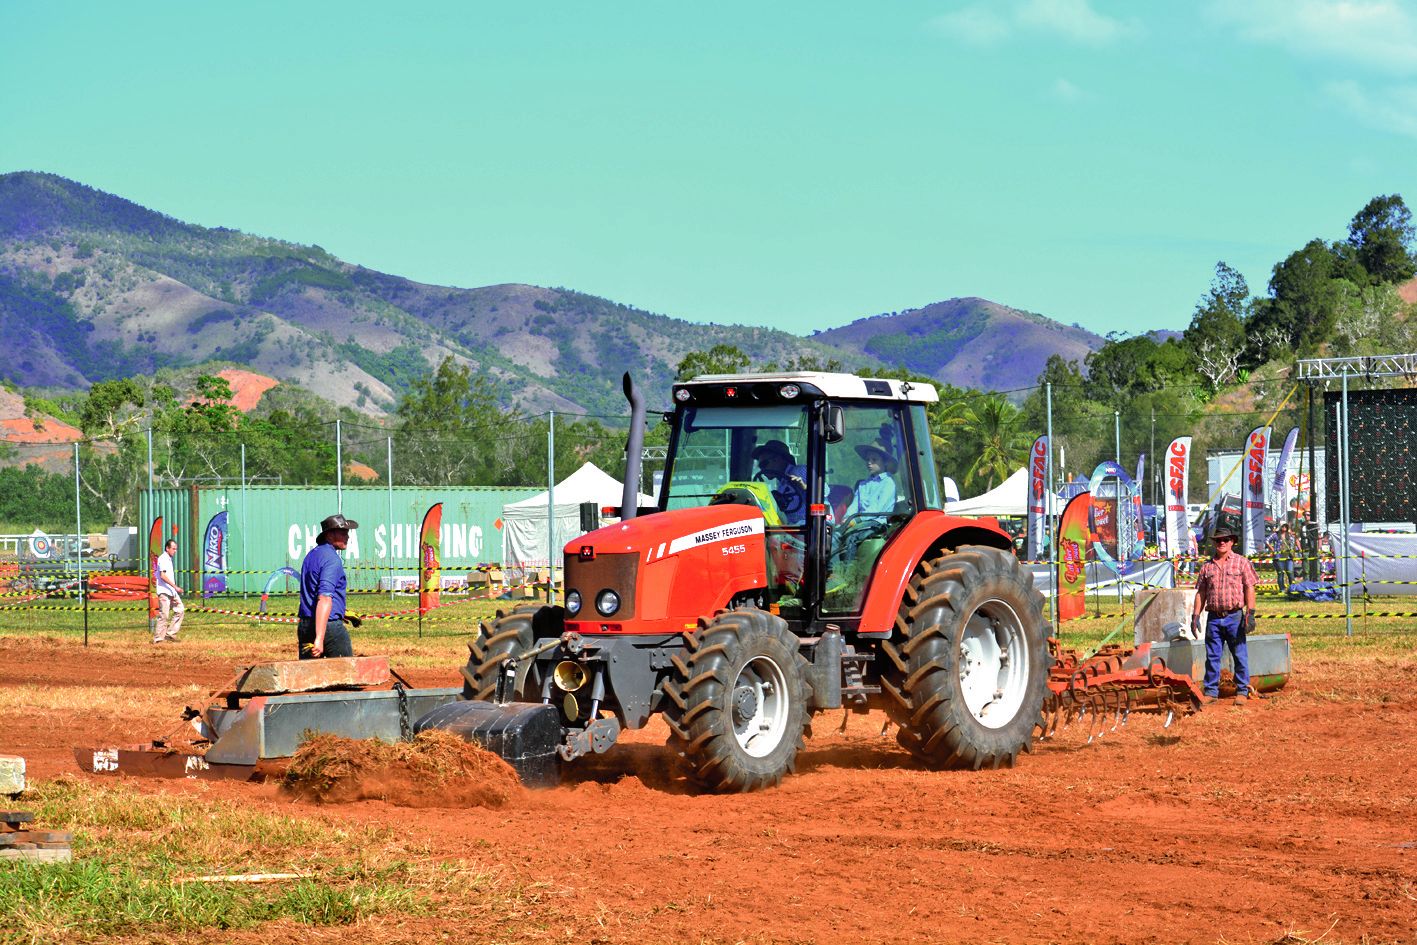 Les agriculteurs prennent plaisir à montrer leur savoir-faire à bord de leur tracteur ou autres engins agricoles durant le concours de tractor pulling.